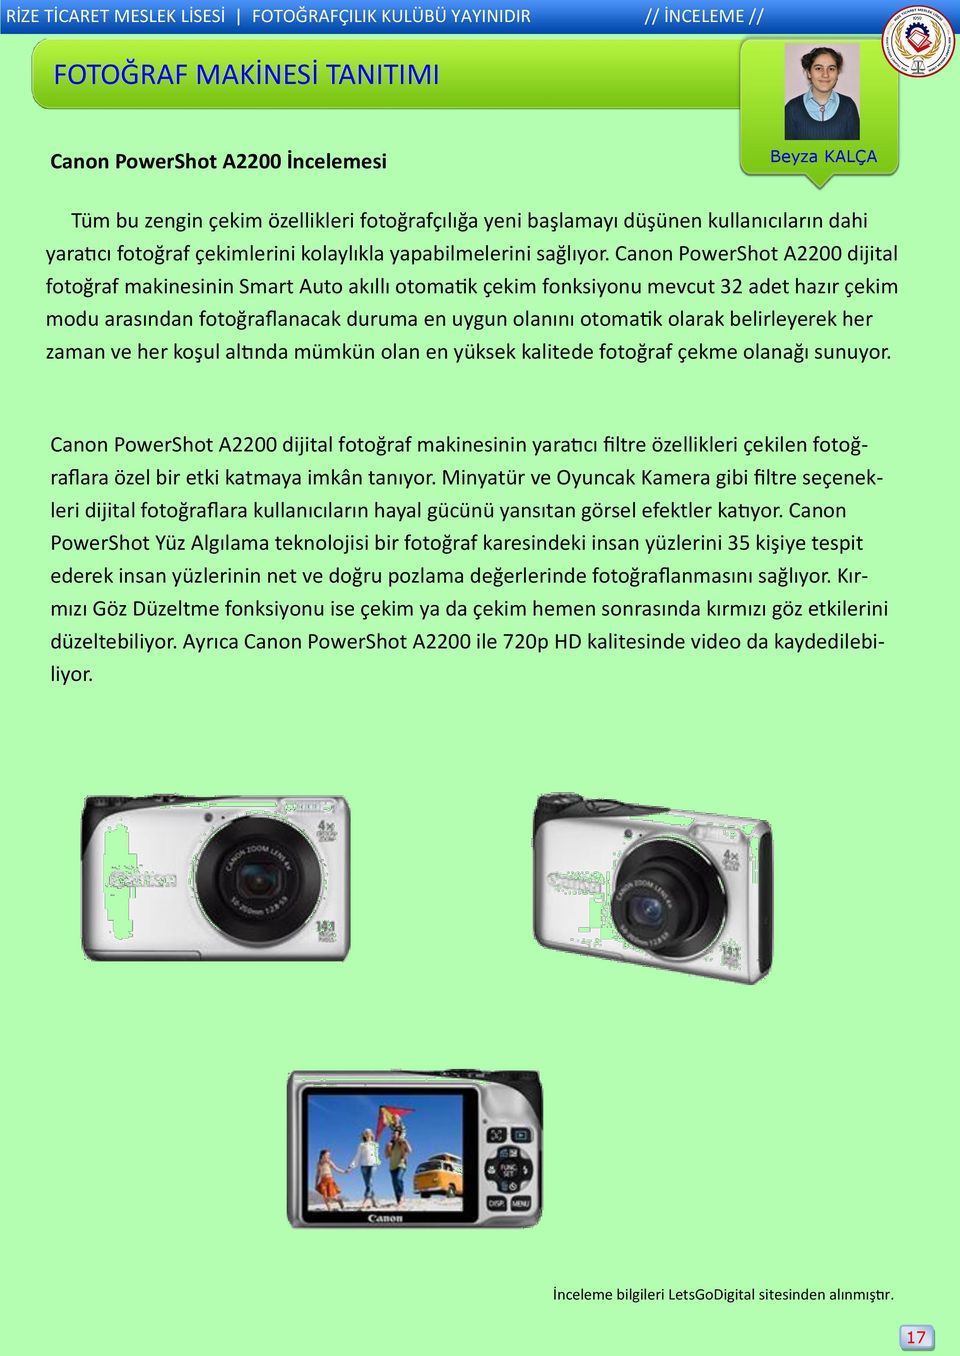 Canon PowerShot A2200 dijital fotoğraf makinesinin Smart Auto akıllı otomatik çekim fonksiyonu mevcut 32 adet hazır çekim modu arasından fotoğraflanacak duruma en uygun olanını otomatik olarak